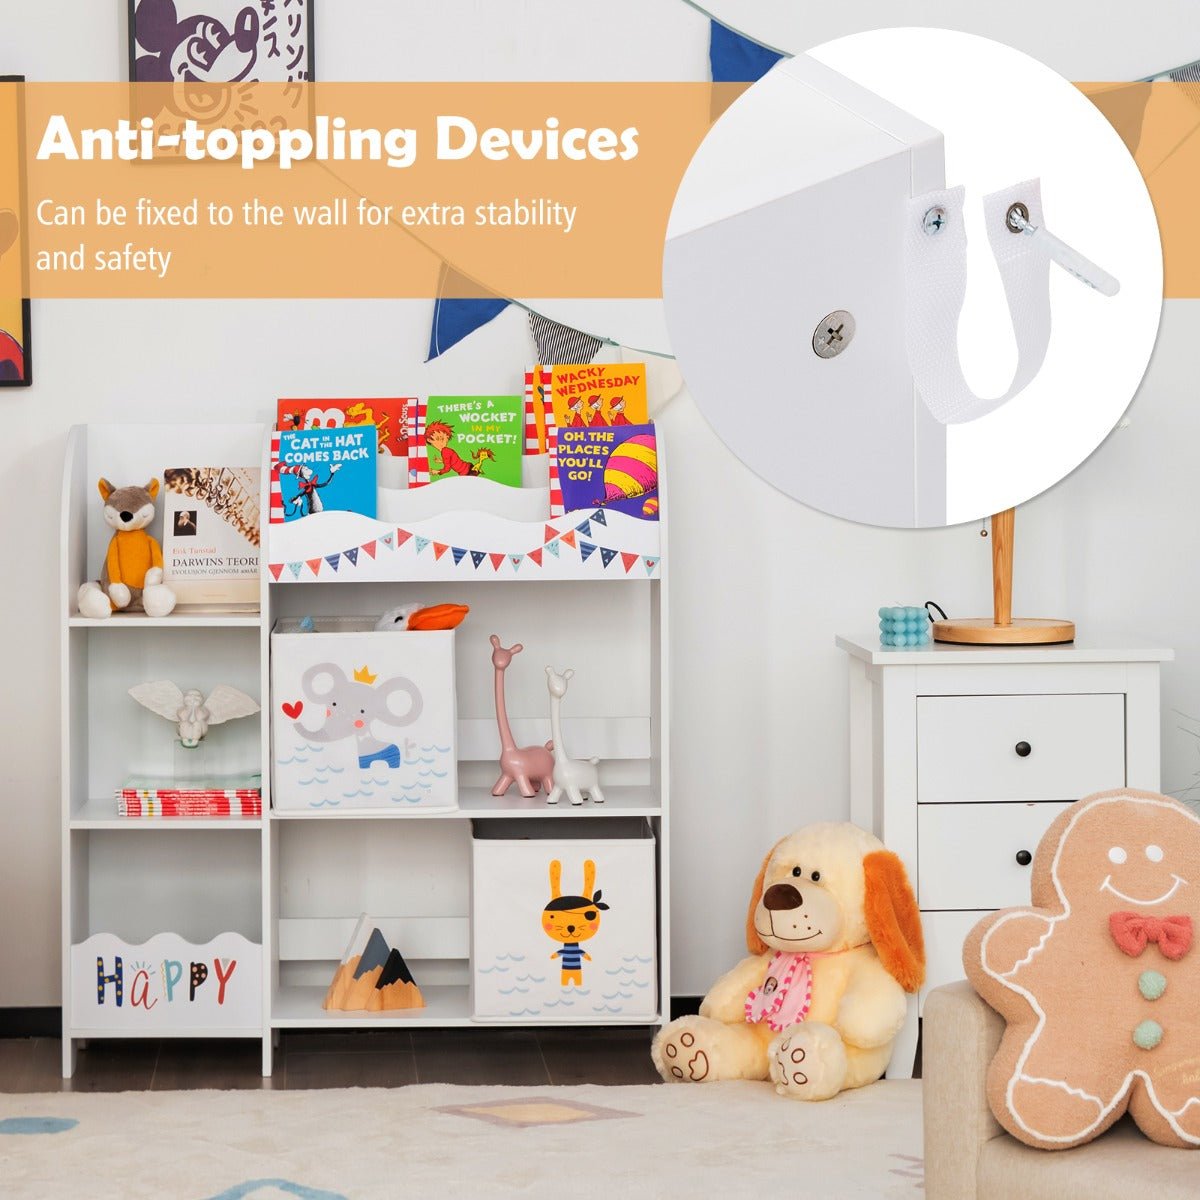 Child's Room Bookshelf Toy Storage with Display Shelf and Bin - Organized Play